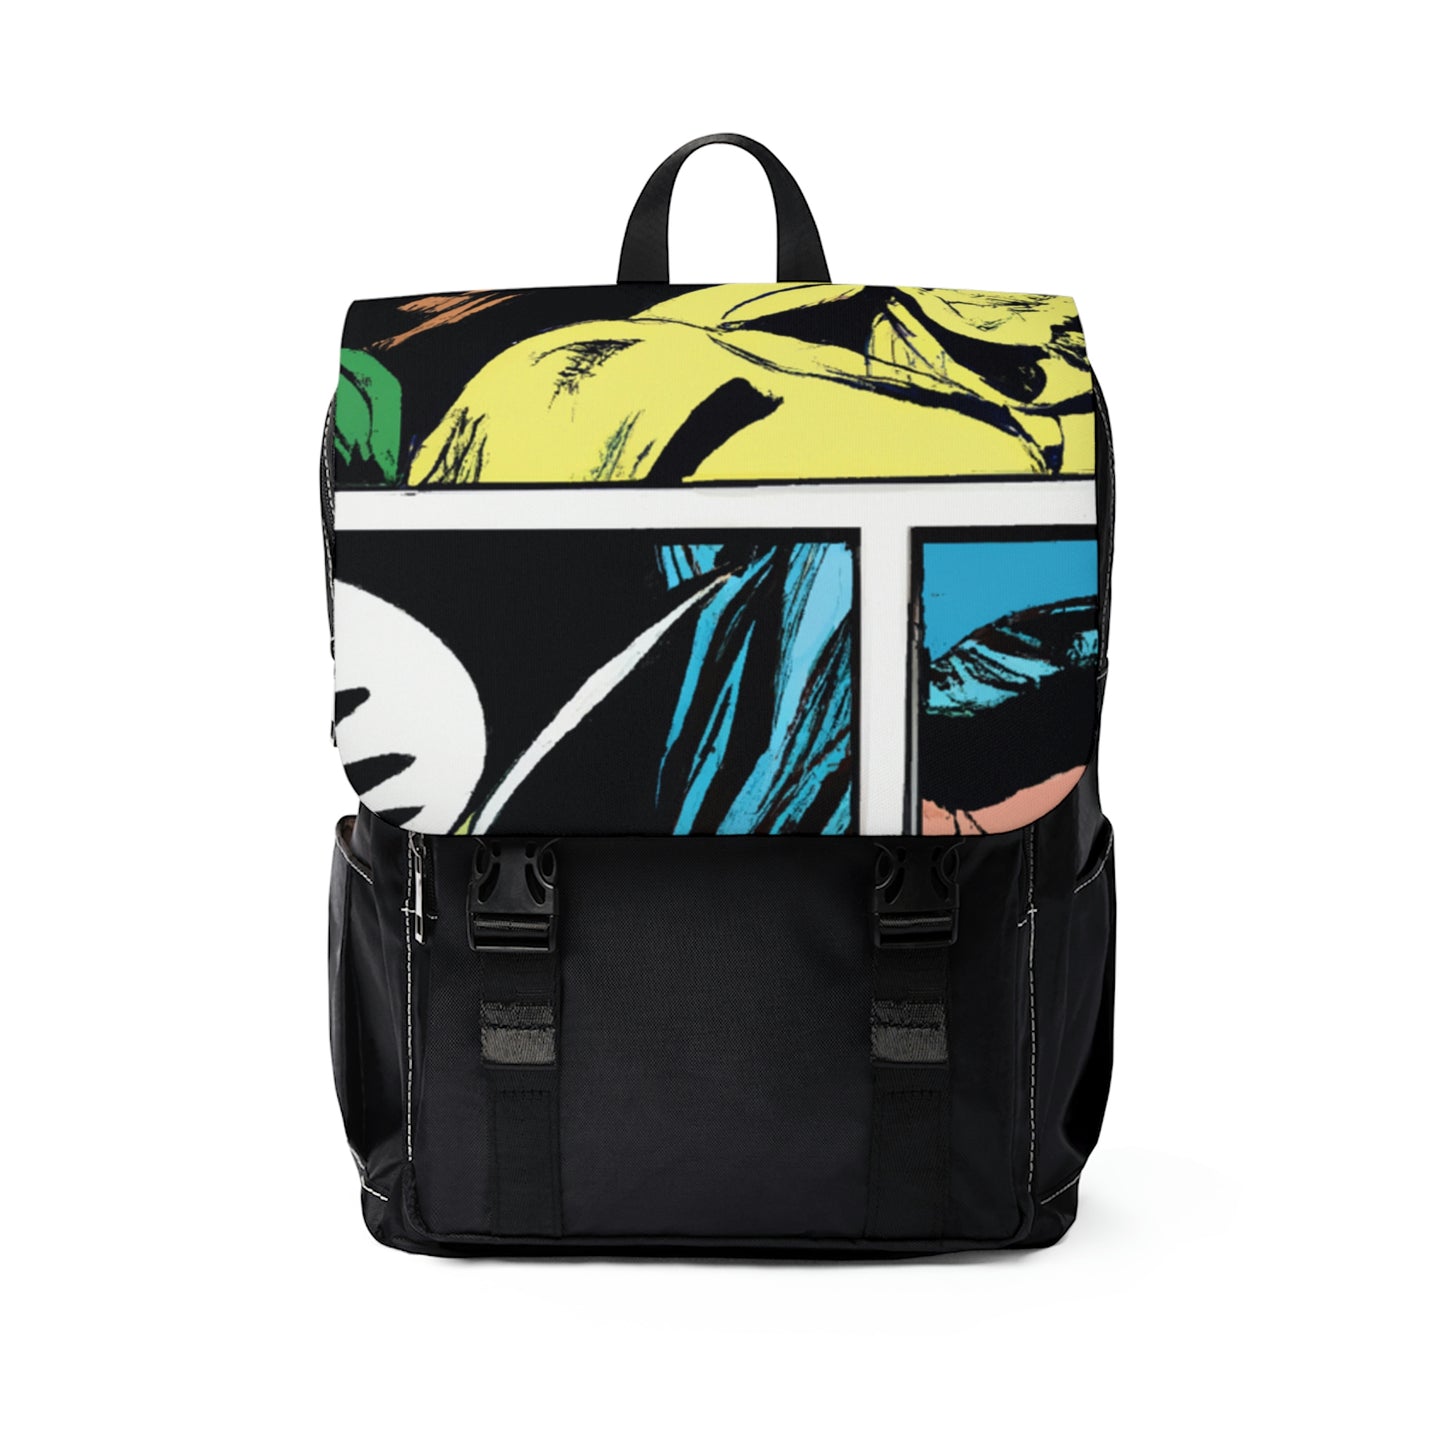 Monetière - Comic Book Shoulder Travel Backpack Bag